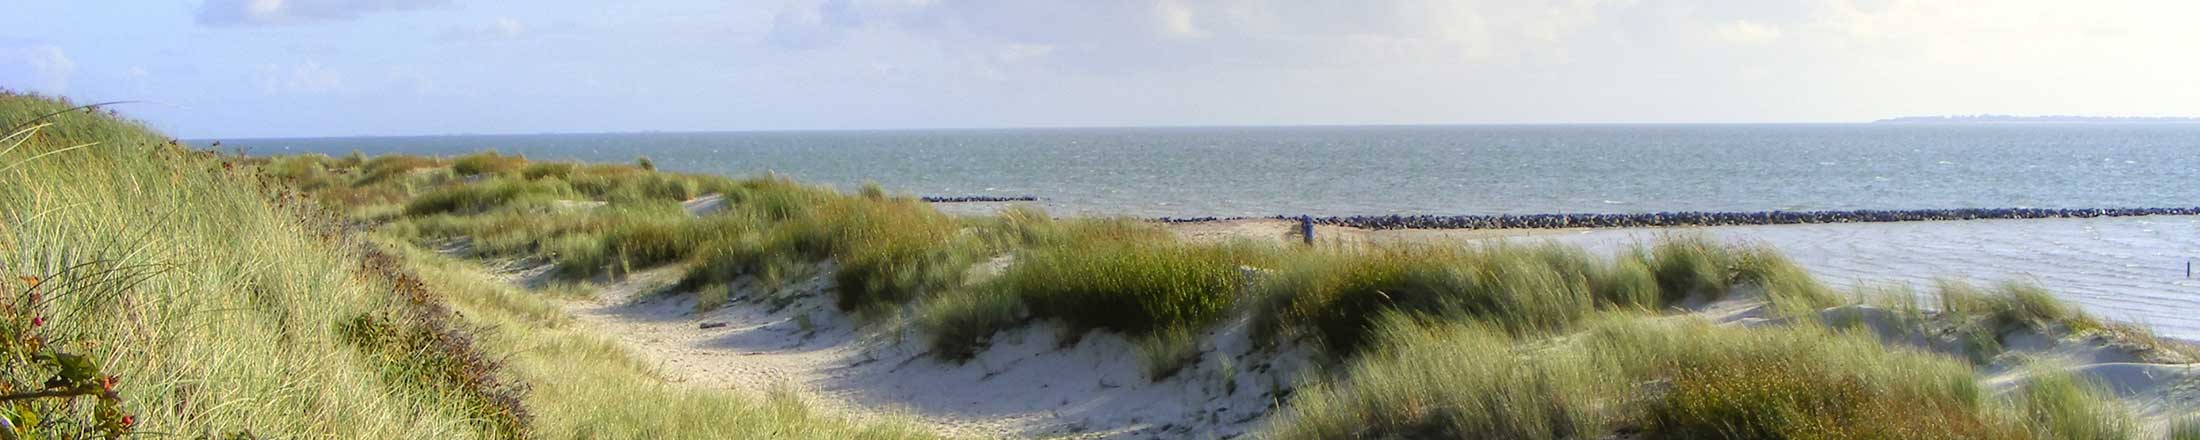 Strand auf Sylt an der Nordsee